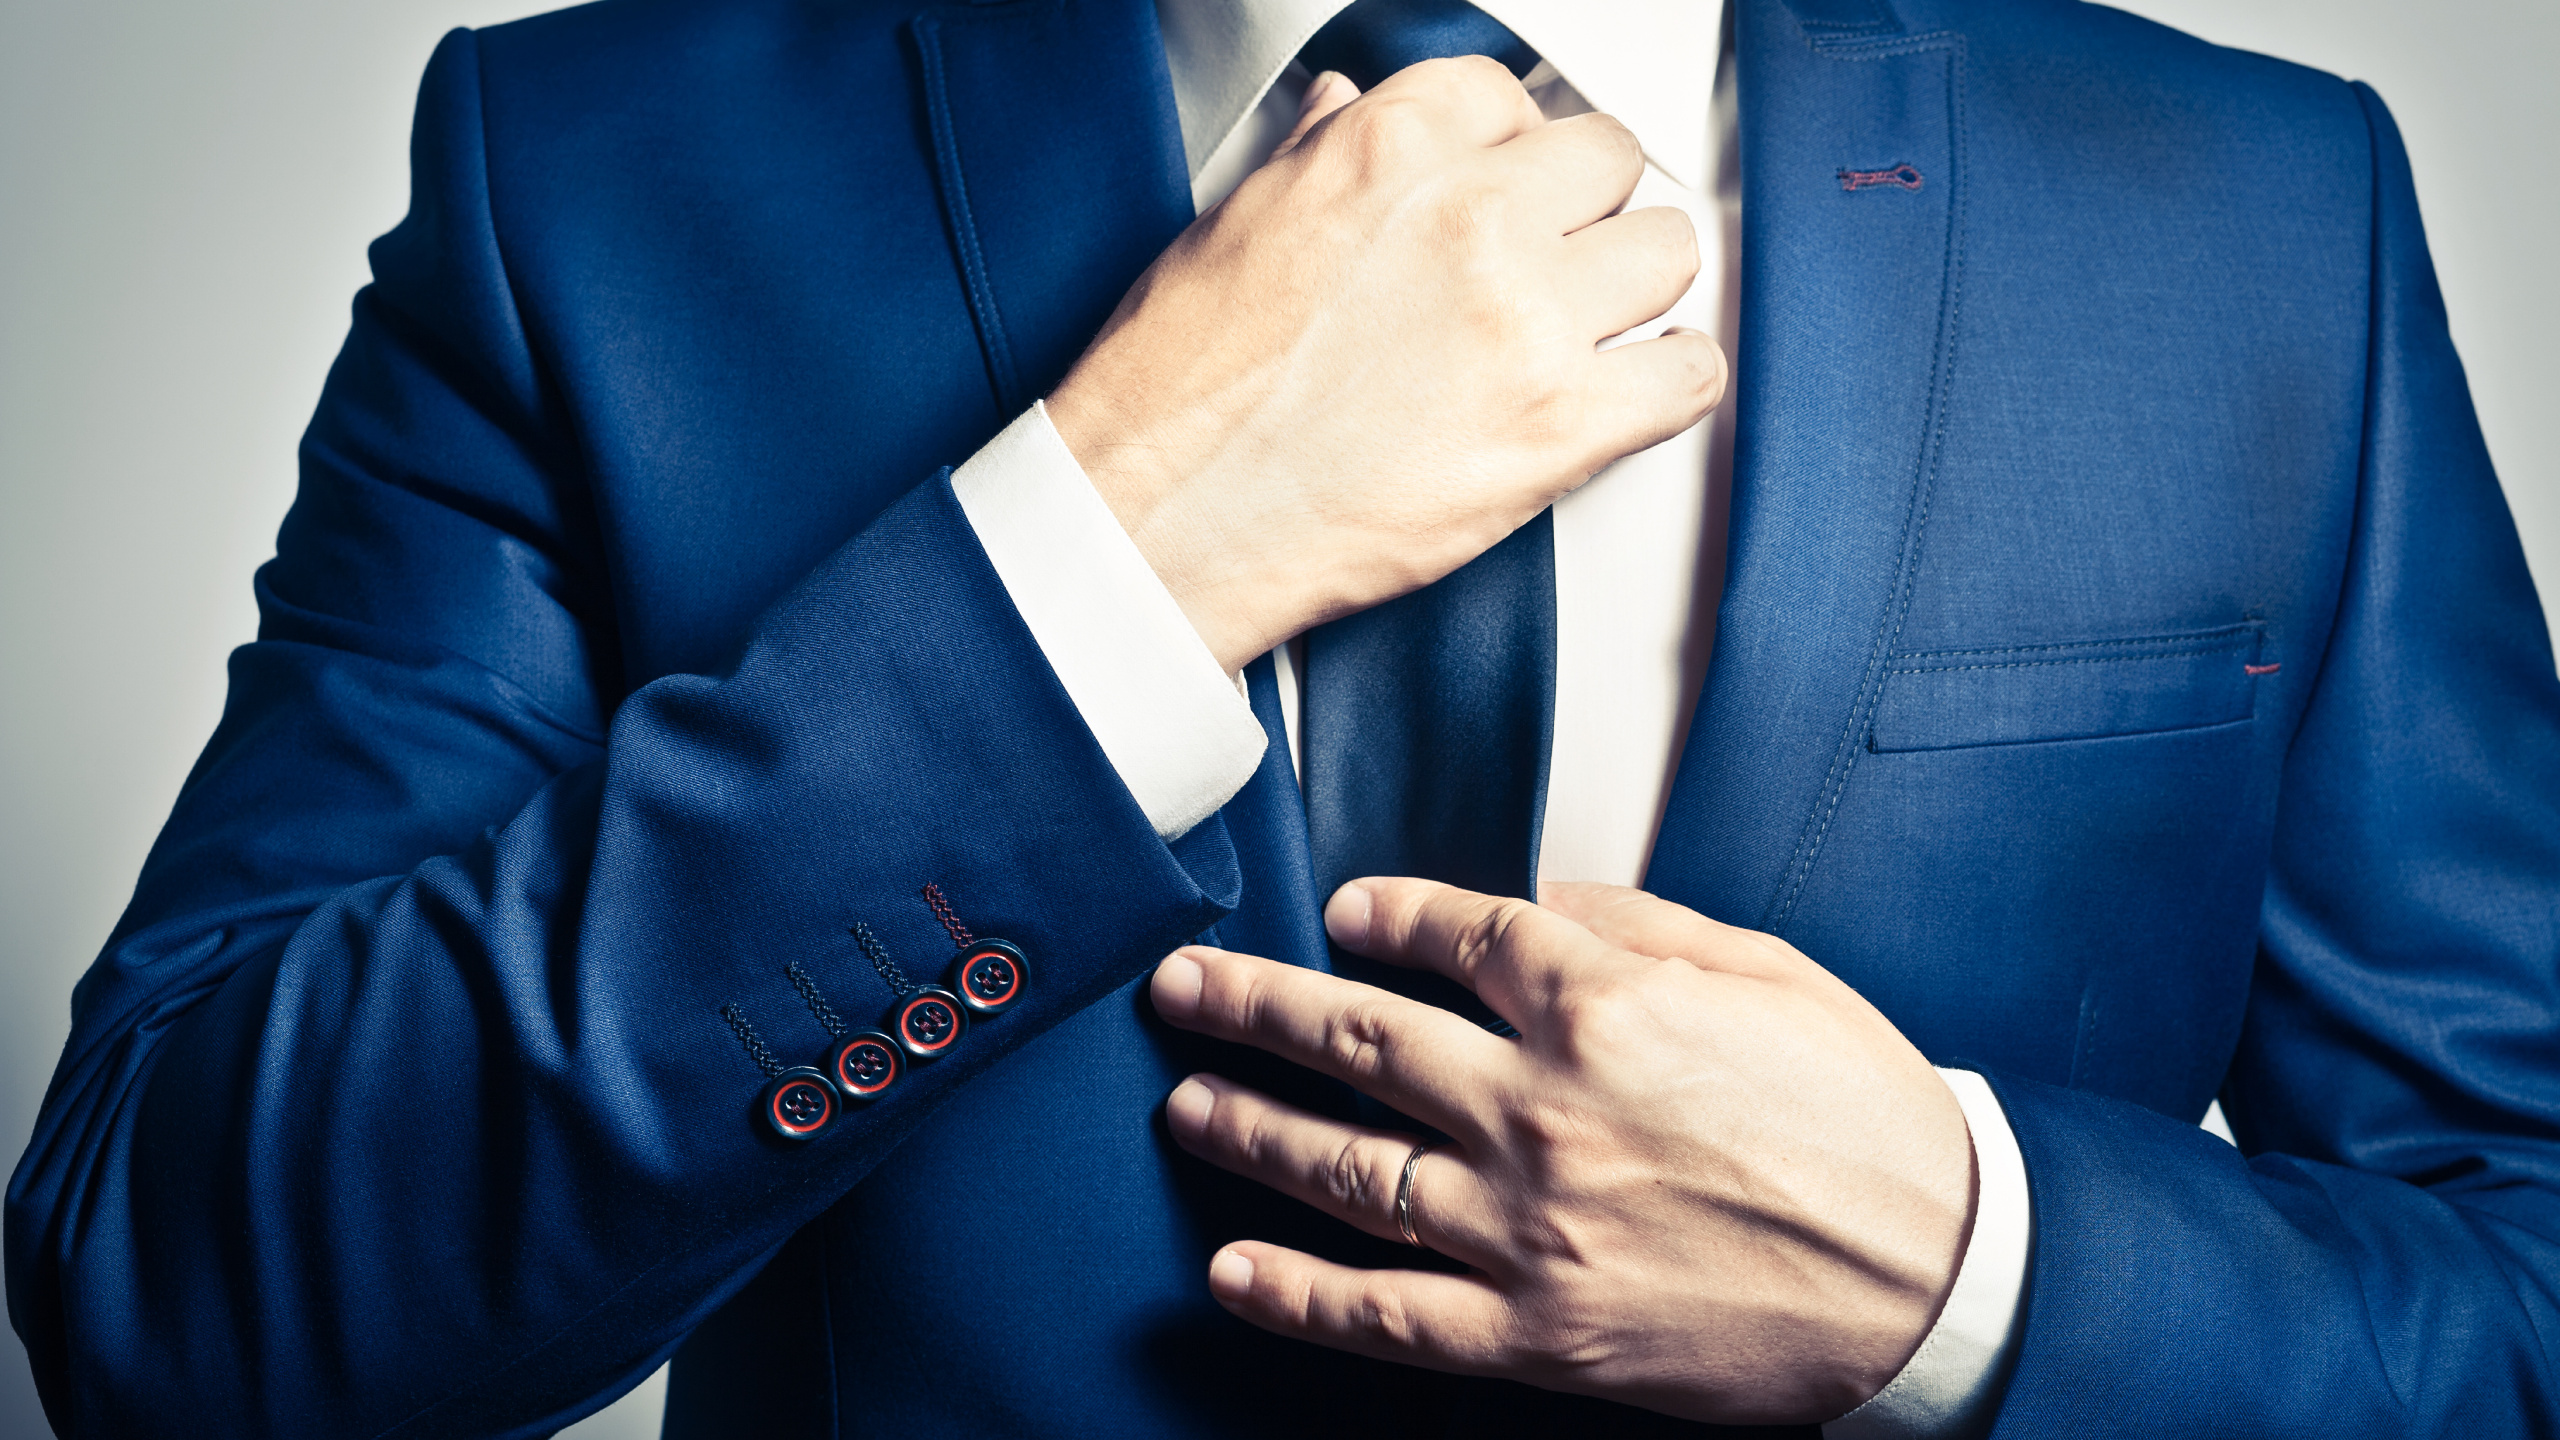 Necktie, Suit, Tuxedo, Blue, Formal Wear. Wallpaper in 2560x1440 Resolution